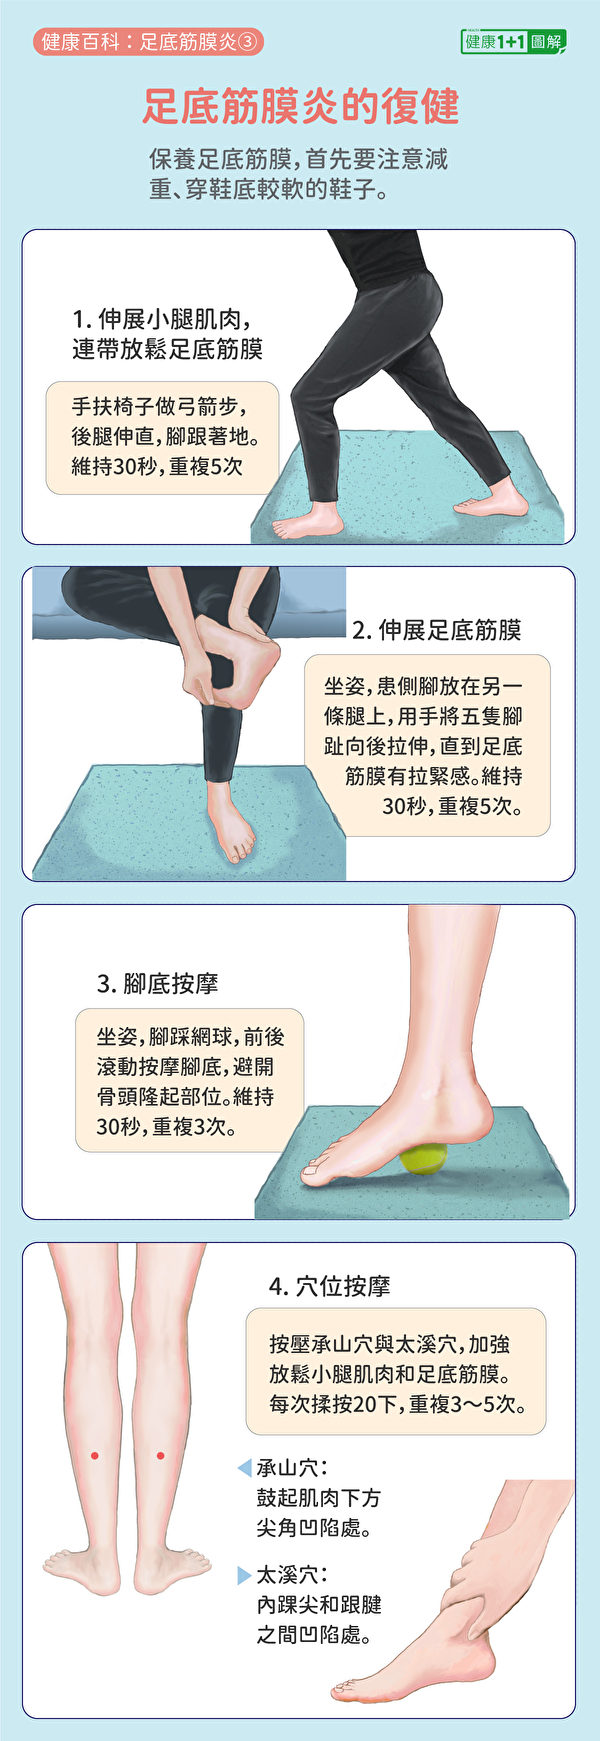 足底筋膜炎复健方法可借助伸展动作、穴位按摩。（健康1+1／大纪元）